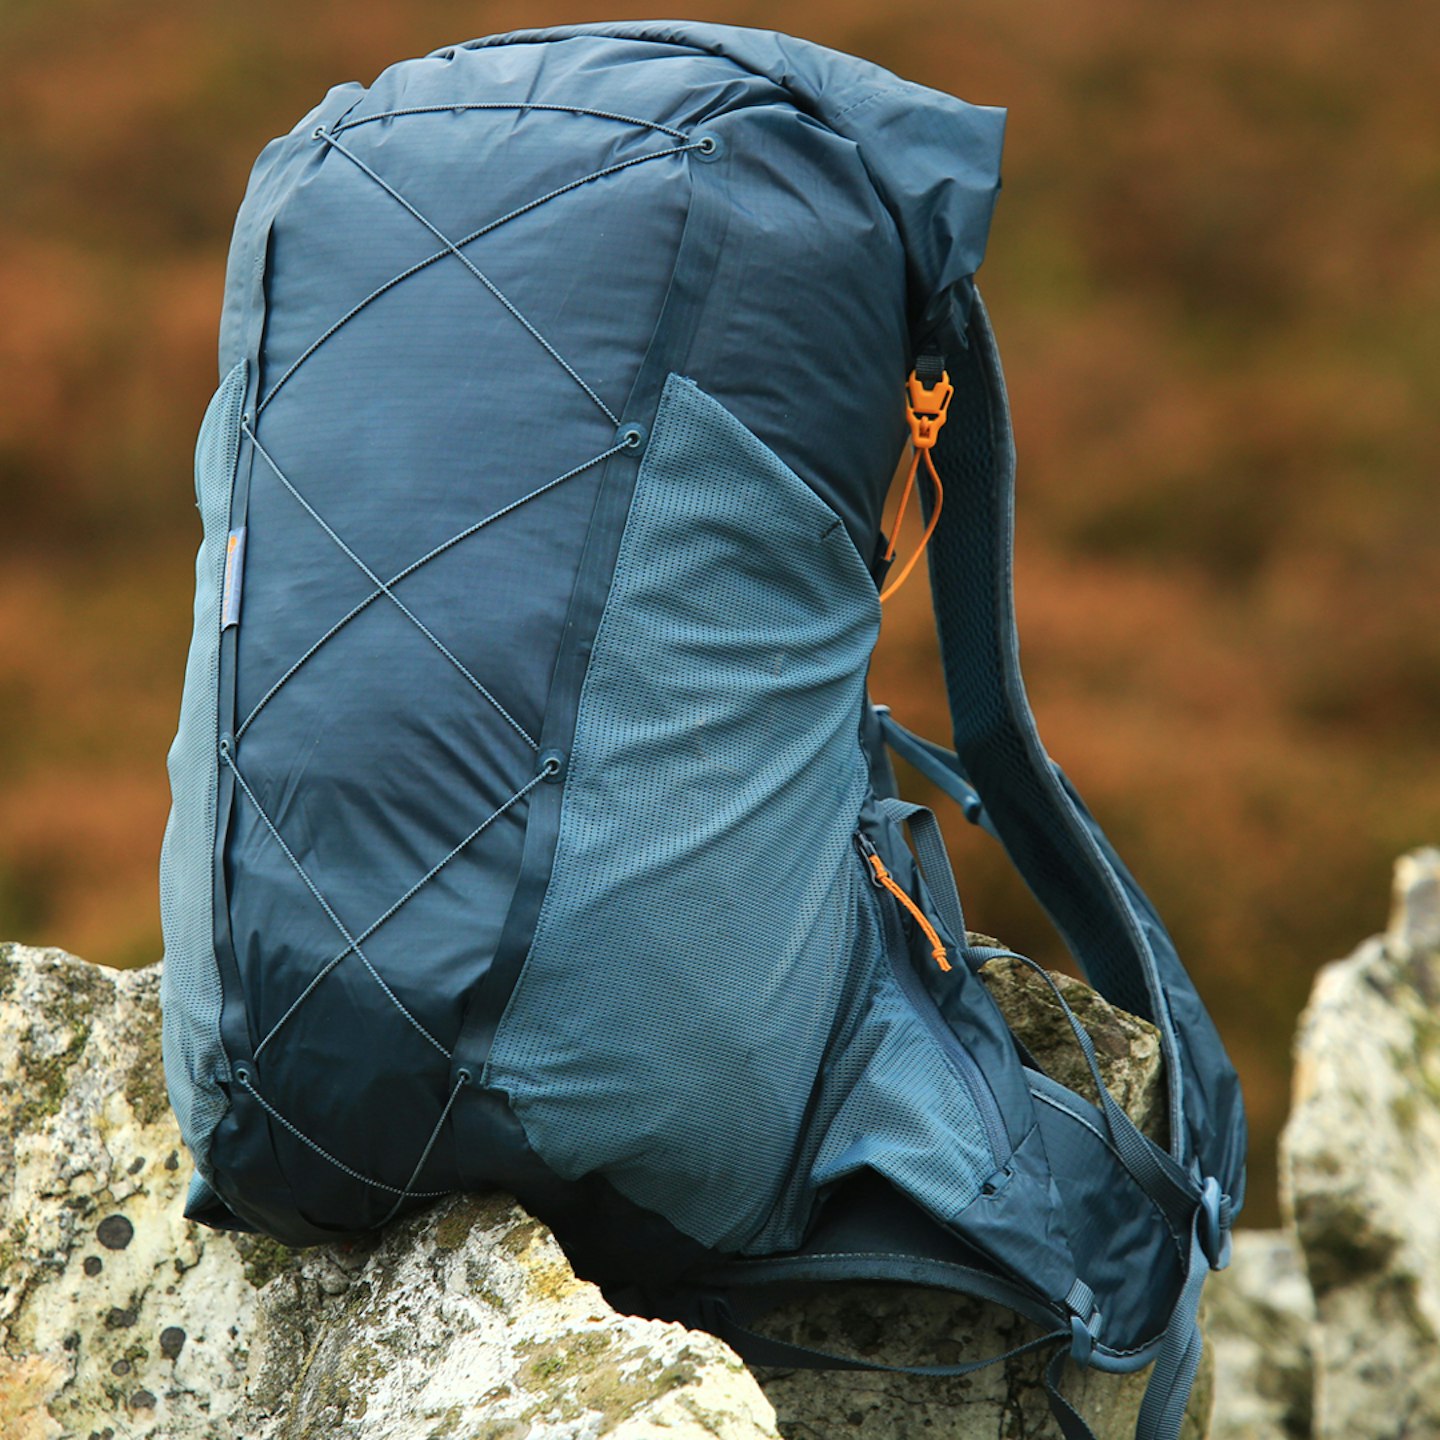 Montane Trailblazer waterproof backpack on the rocks